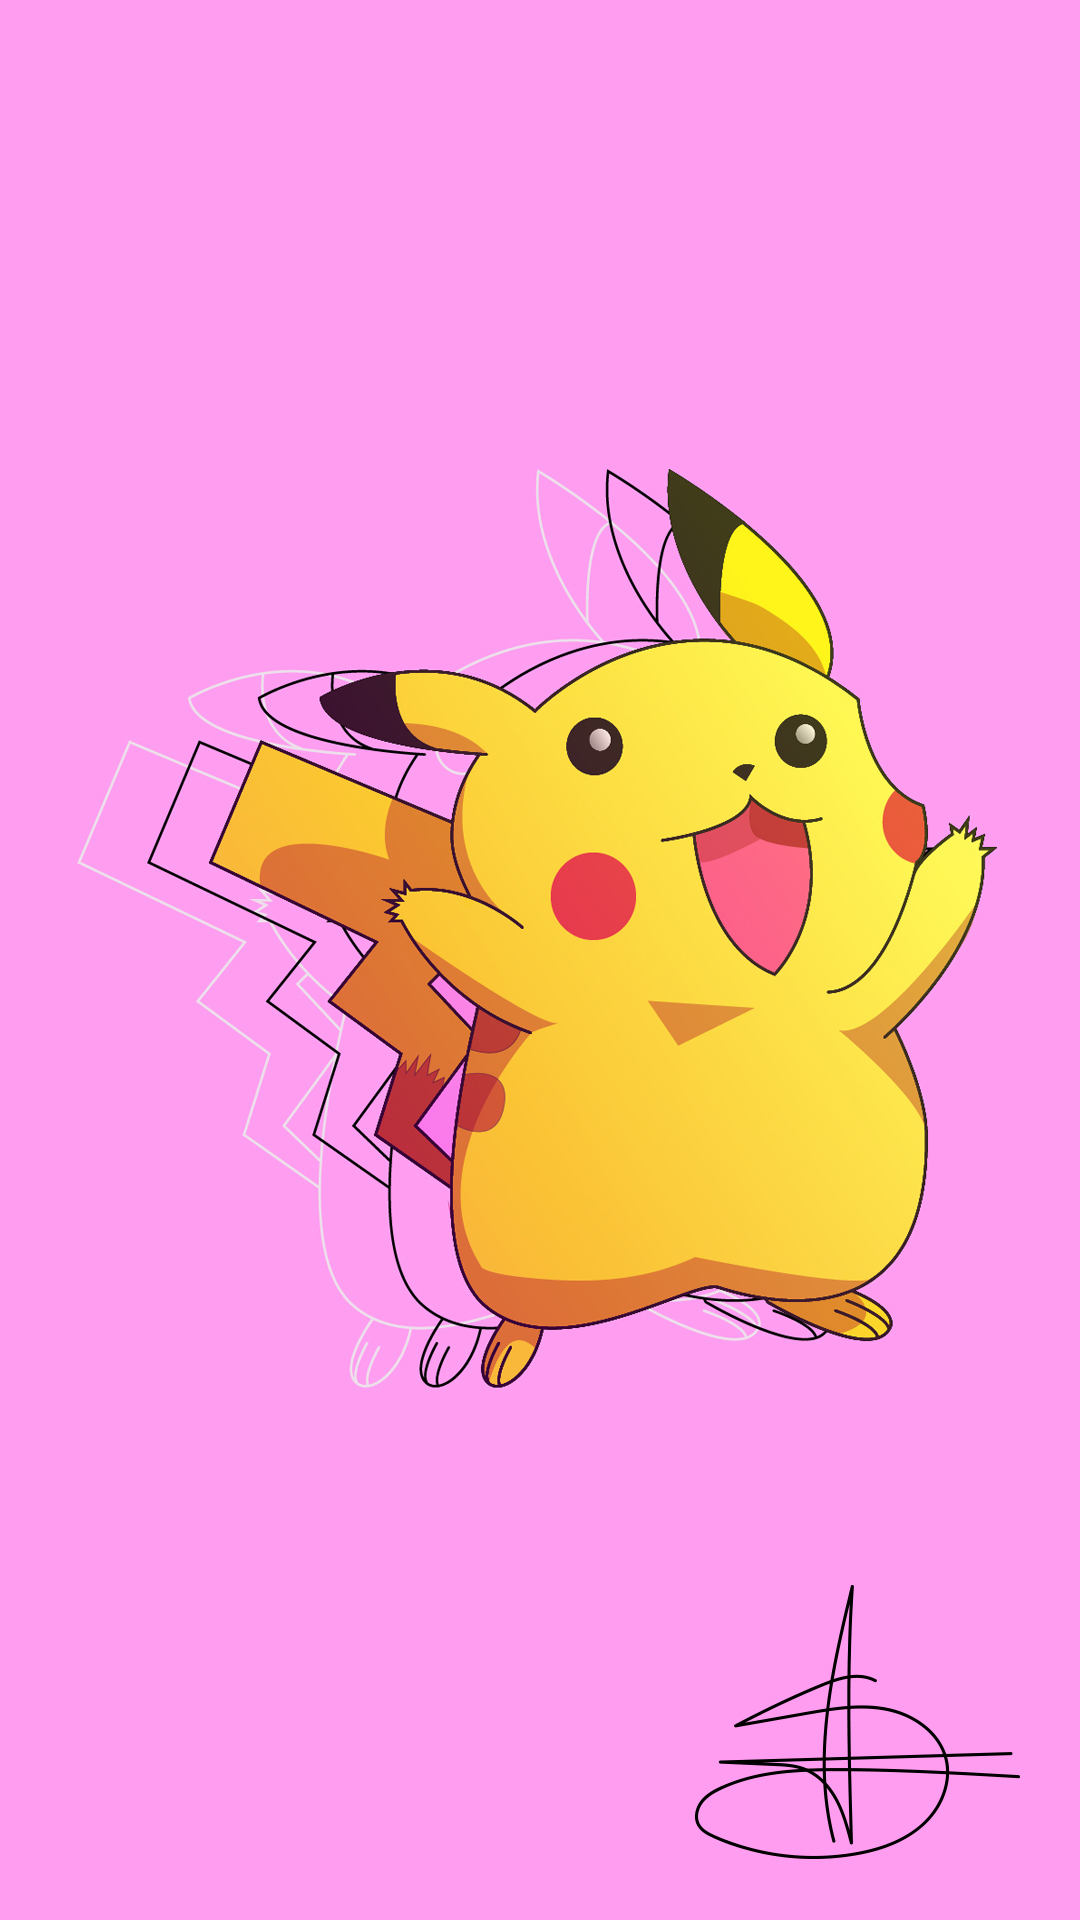 Desenhando Pikachu com roupa da akatsuki 